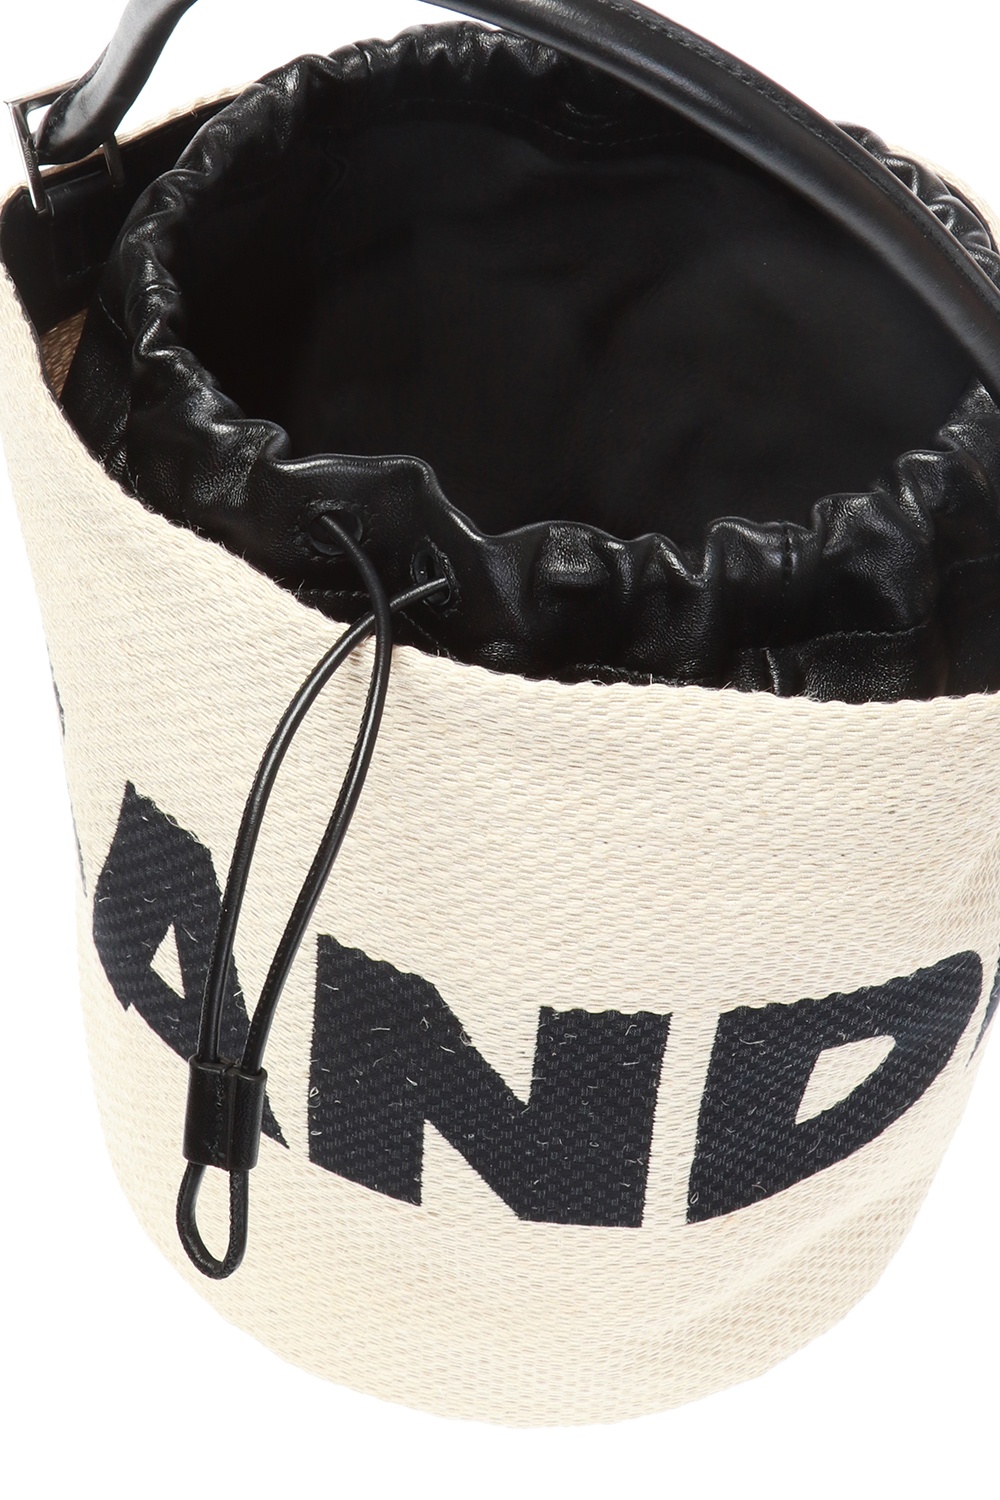 Branded shoulder bag JIL SANDER+ - Vitkac Netherlands